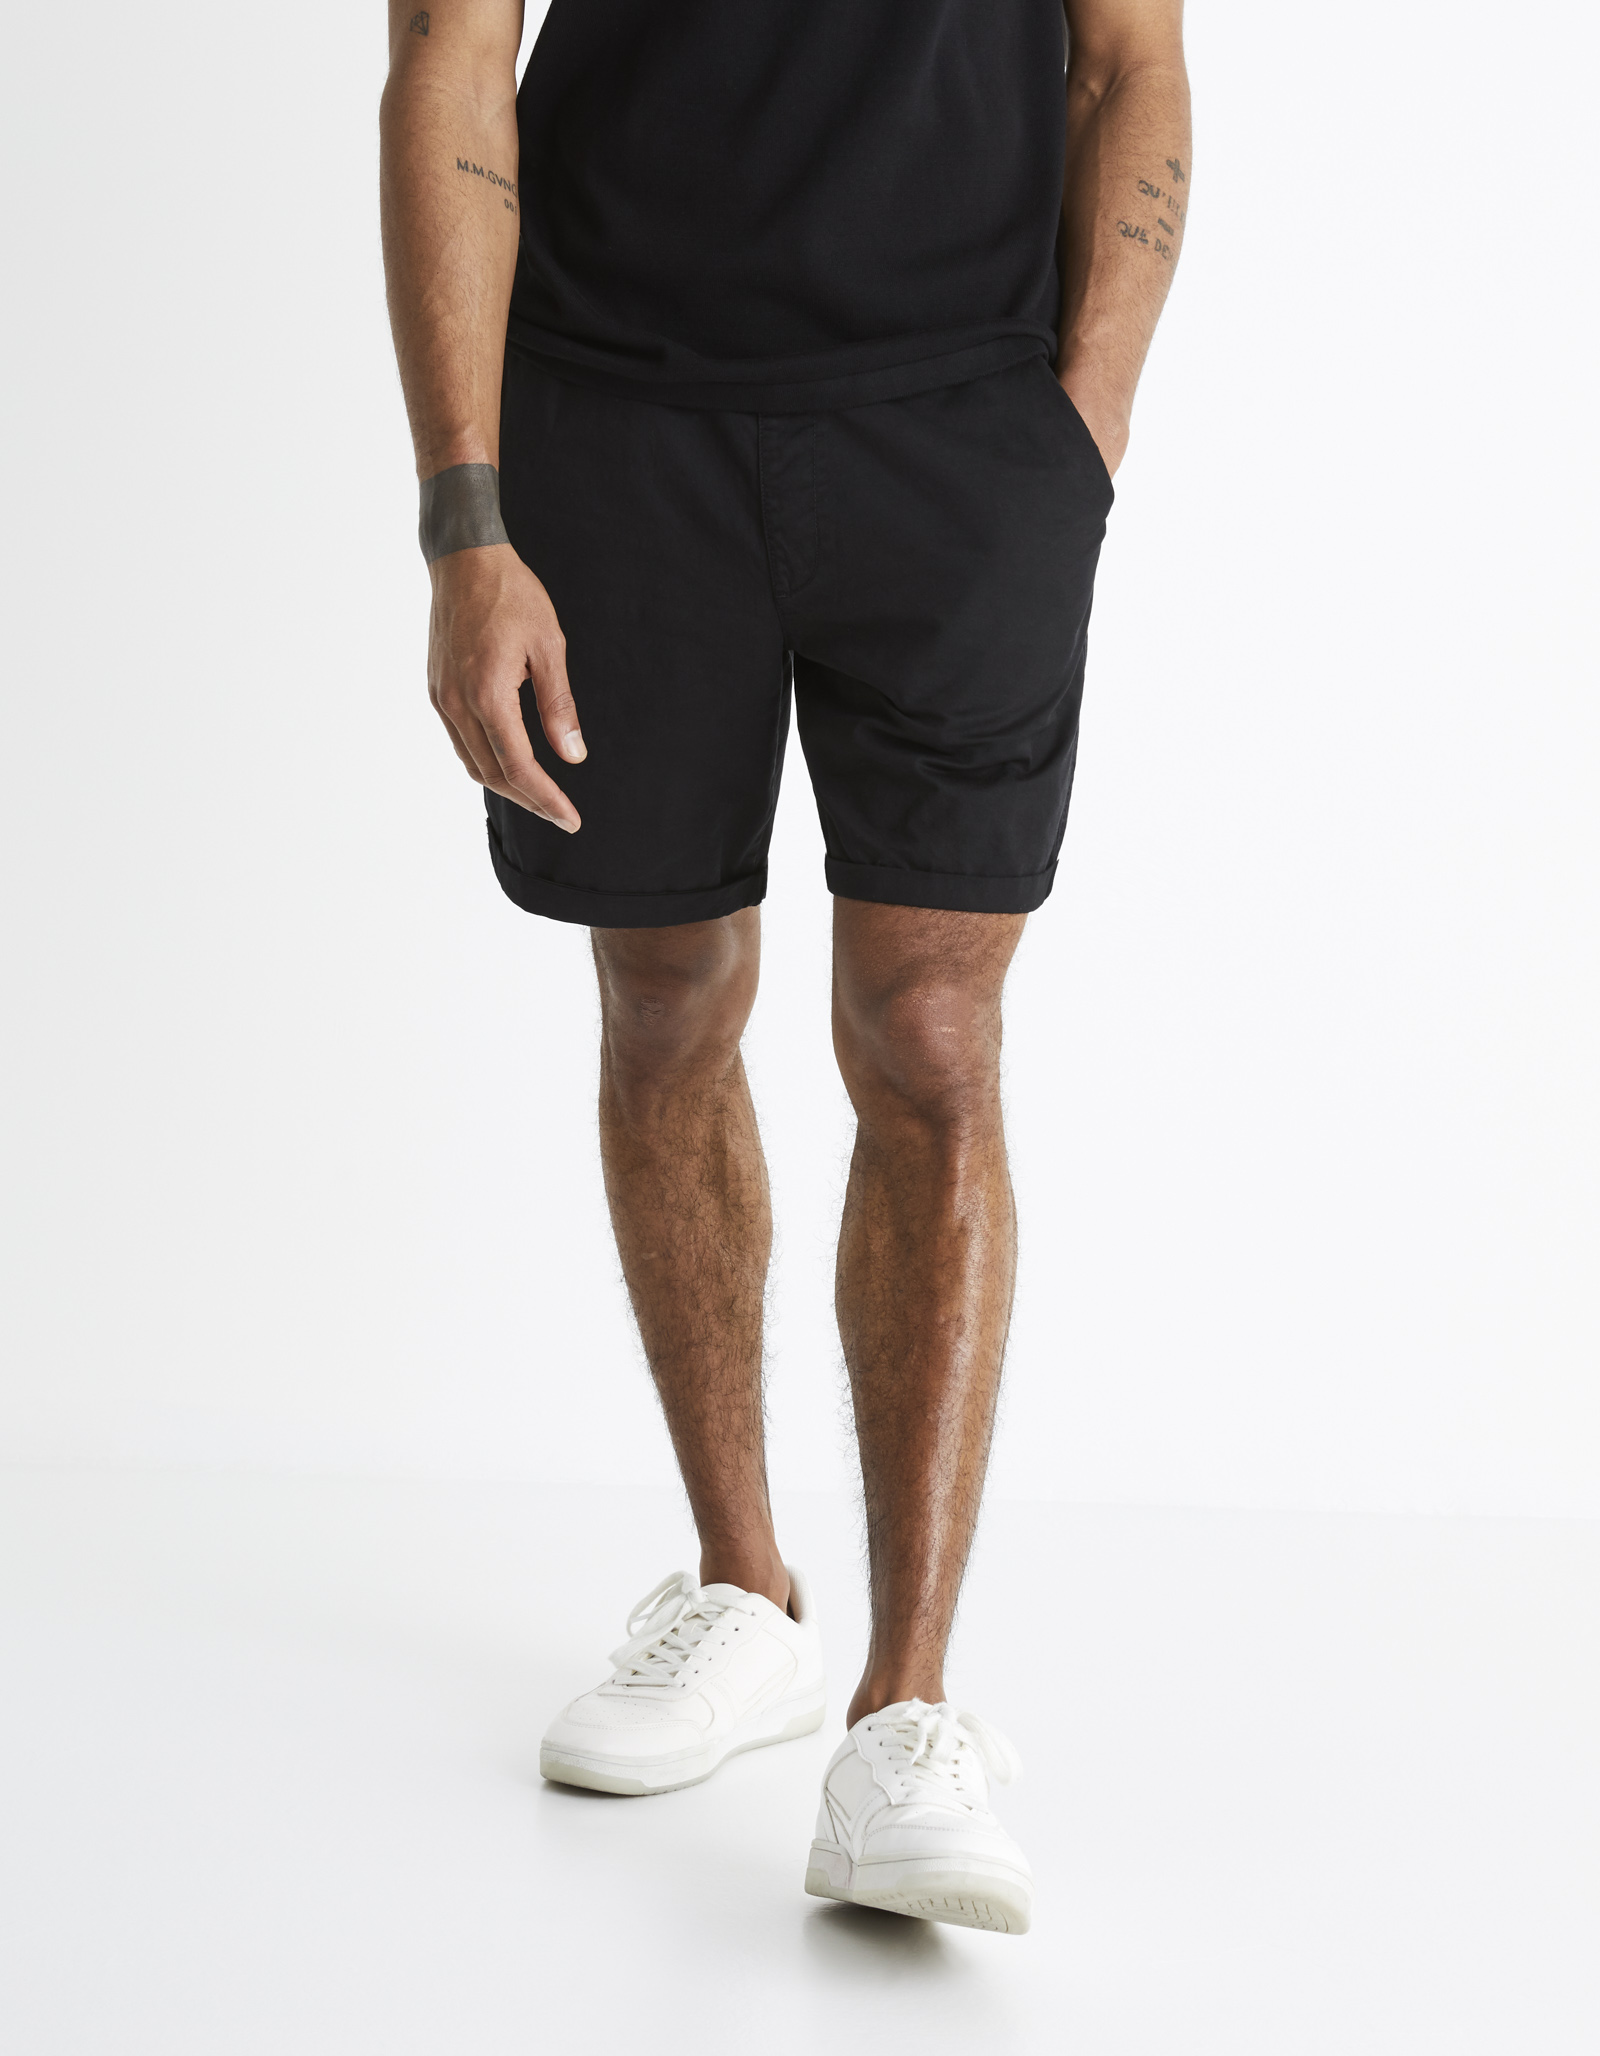 Celio Cotton Shorts Bodealbm - Men